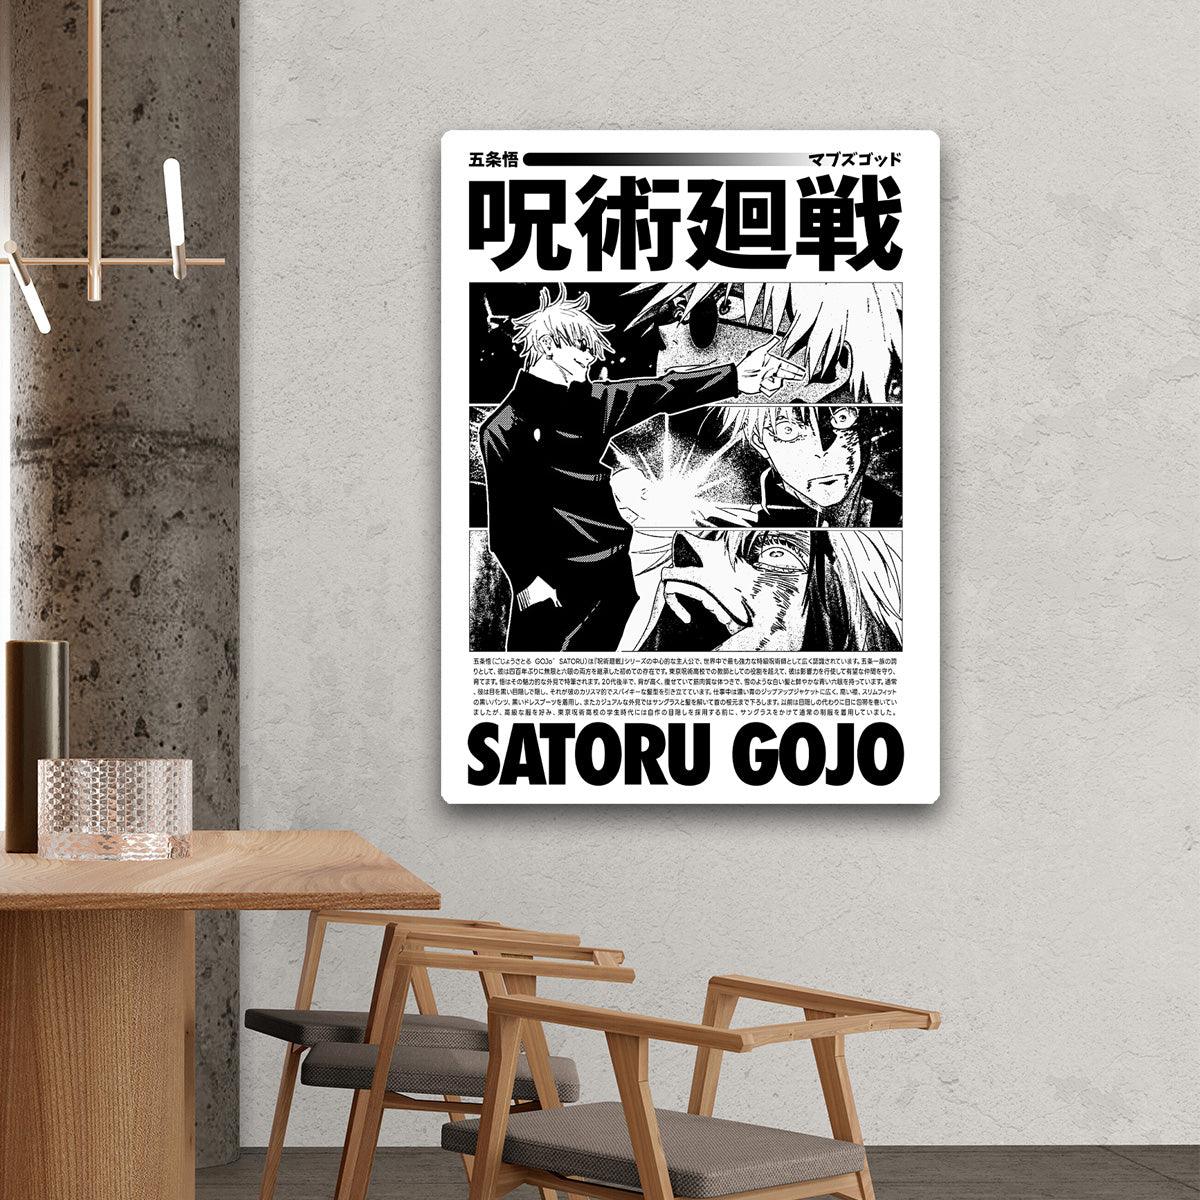 Satoru Gojo - HD Metal Print - PixMagic